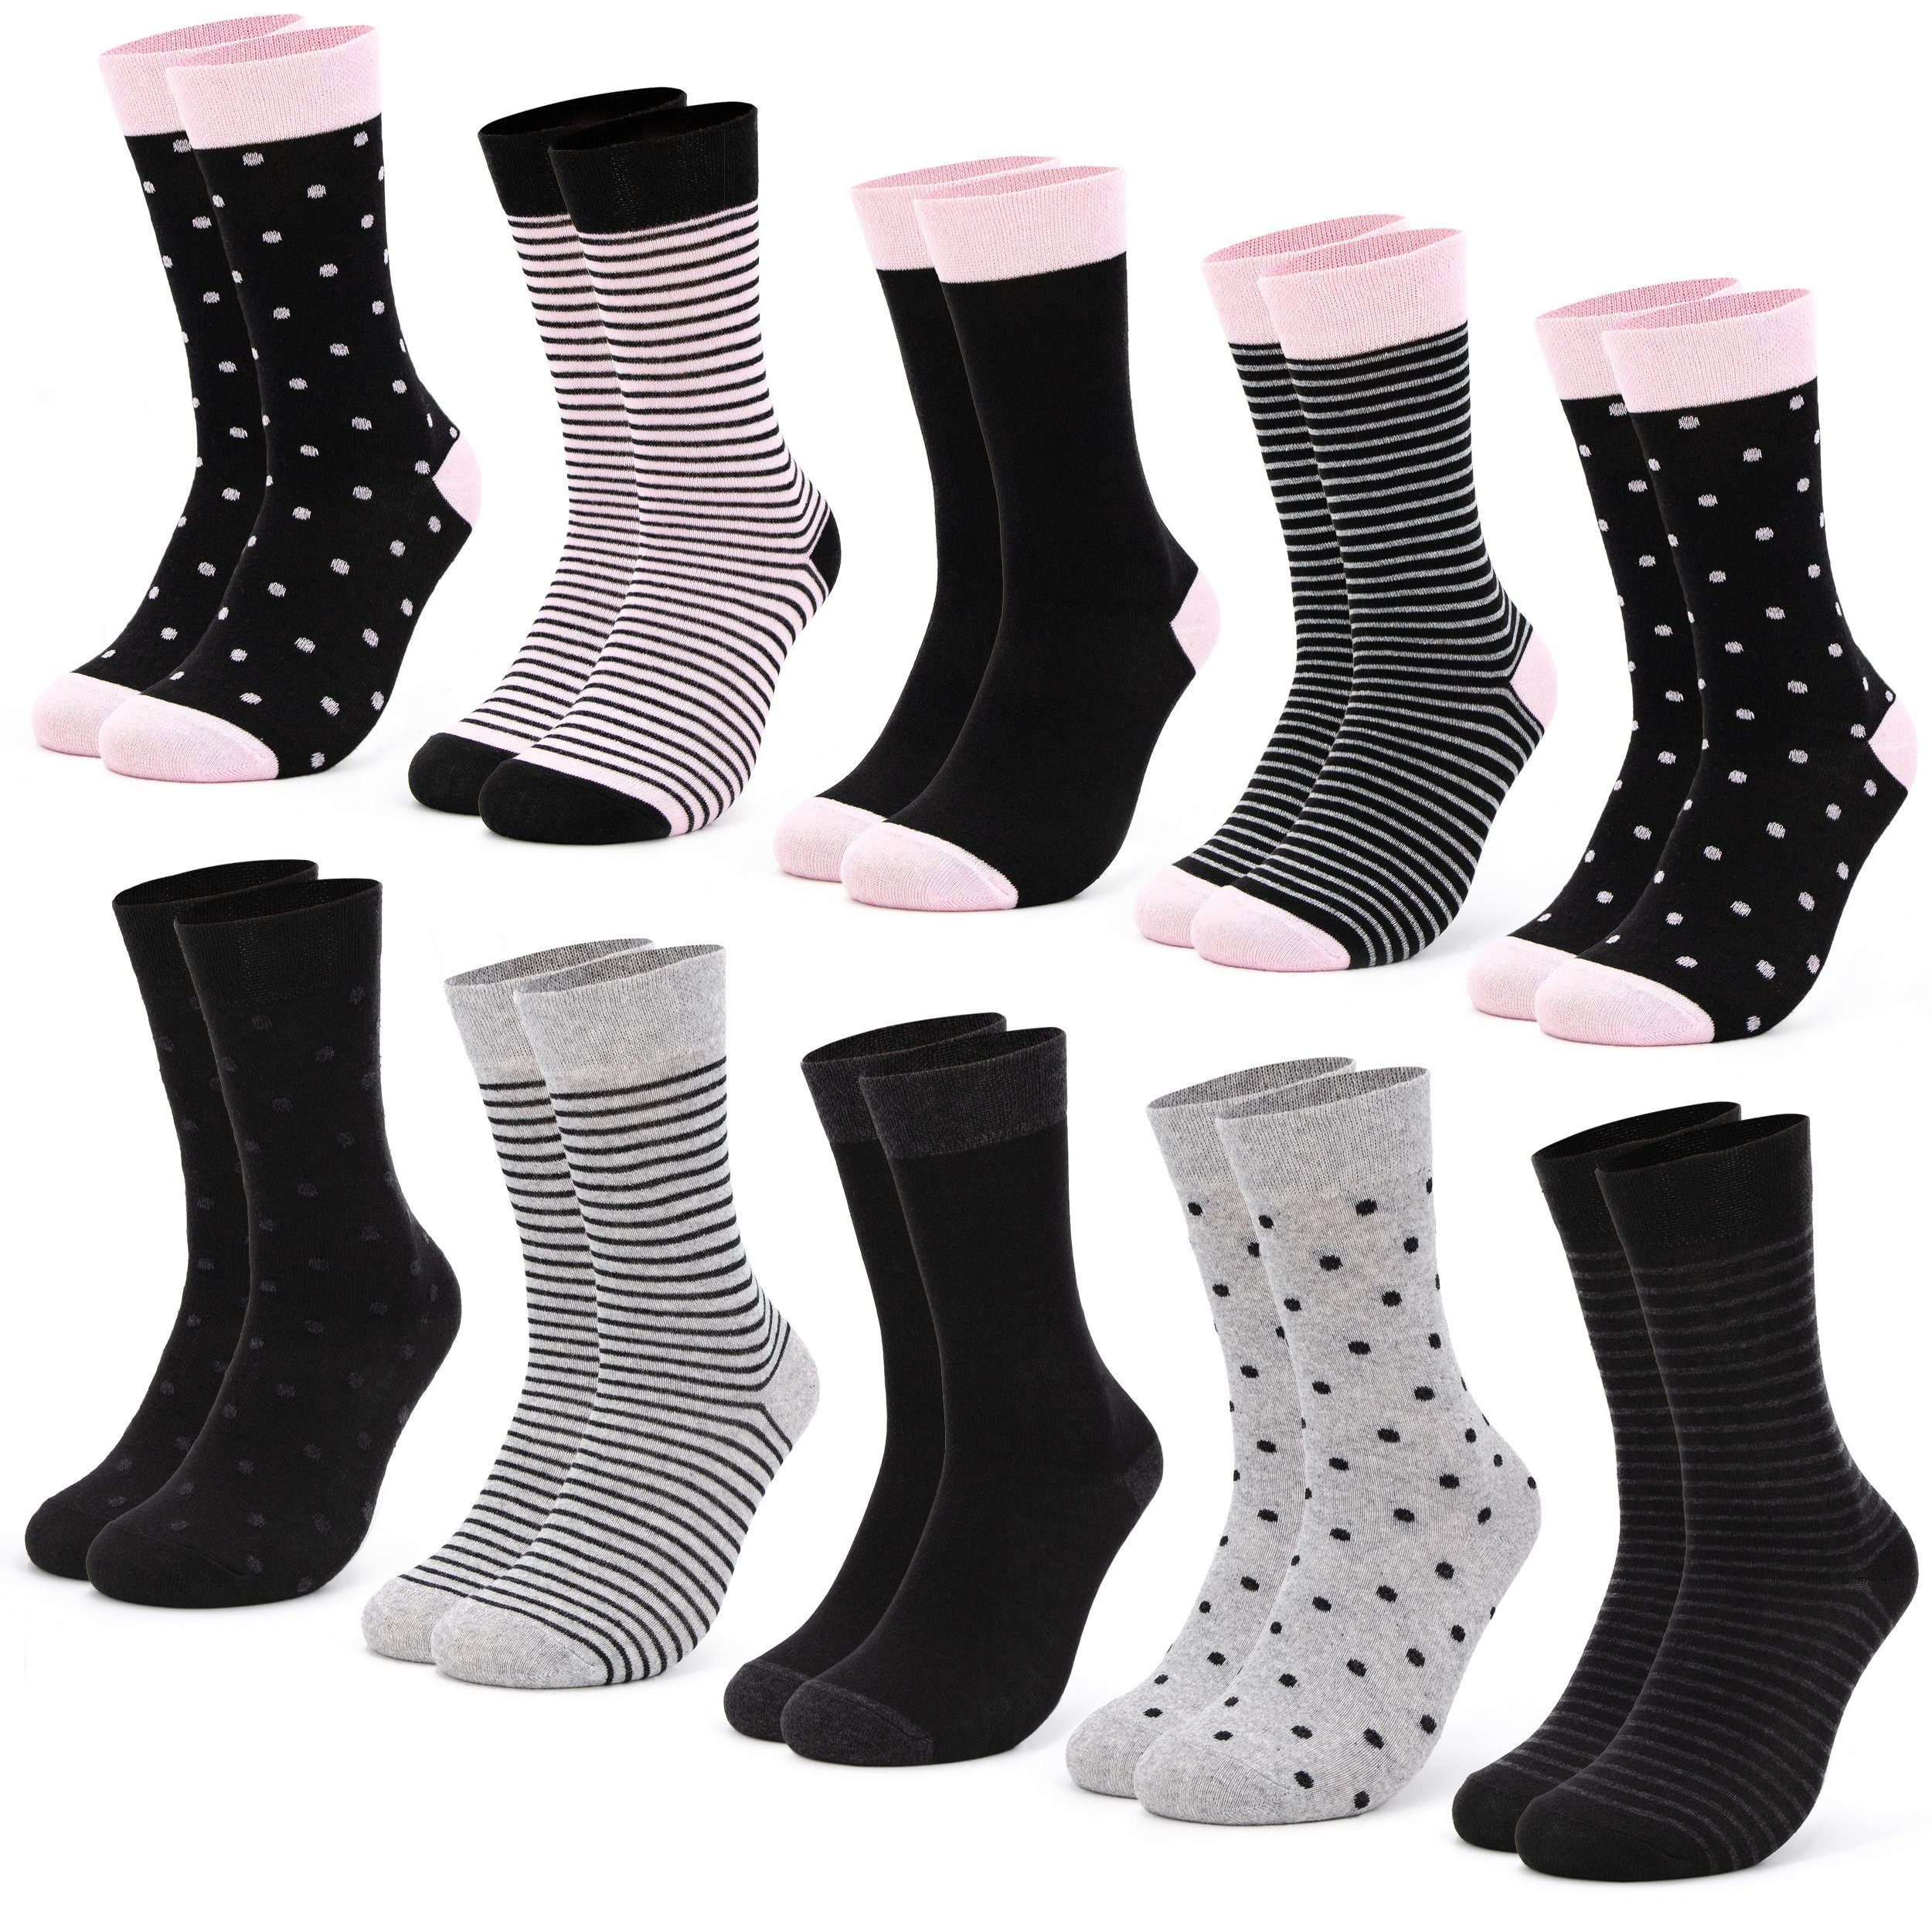 OCCULTO Basicsocken Damen Muster Socken 10 Paar (Modell: Milka) (10-Paar) 10BlkPnk | Lange Socken